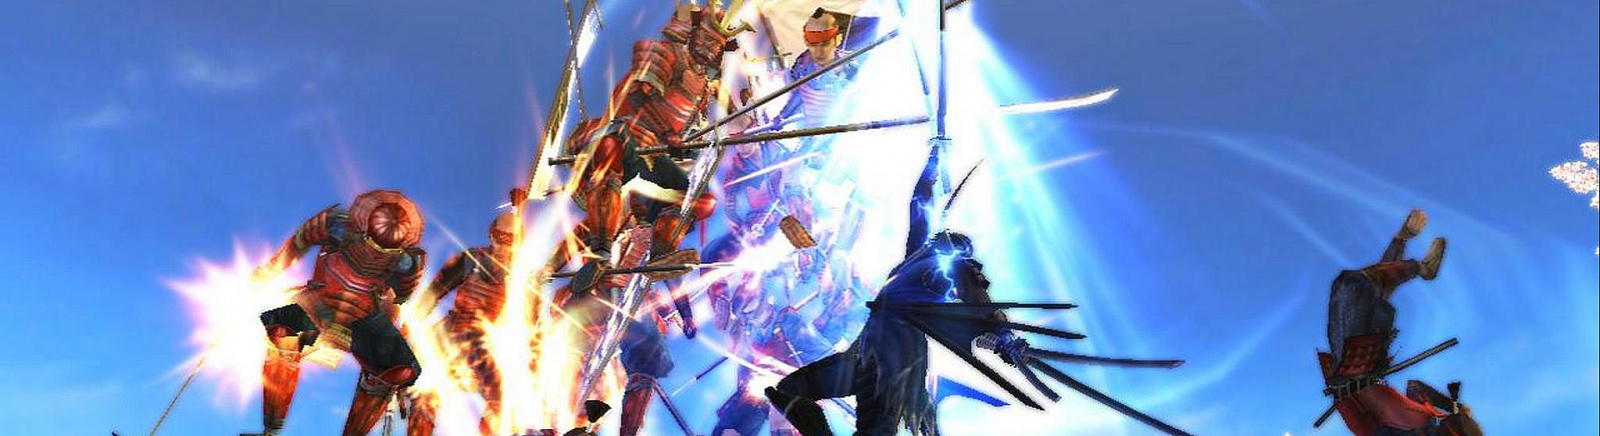 Дата выхода Sengoku Basara: Samurai Heroes  на PS3 и Wii в России и во всем мире